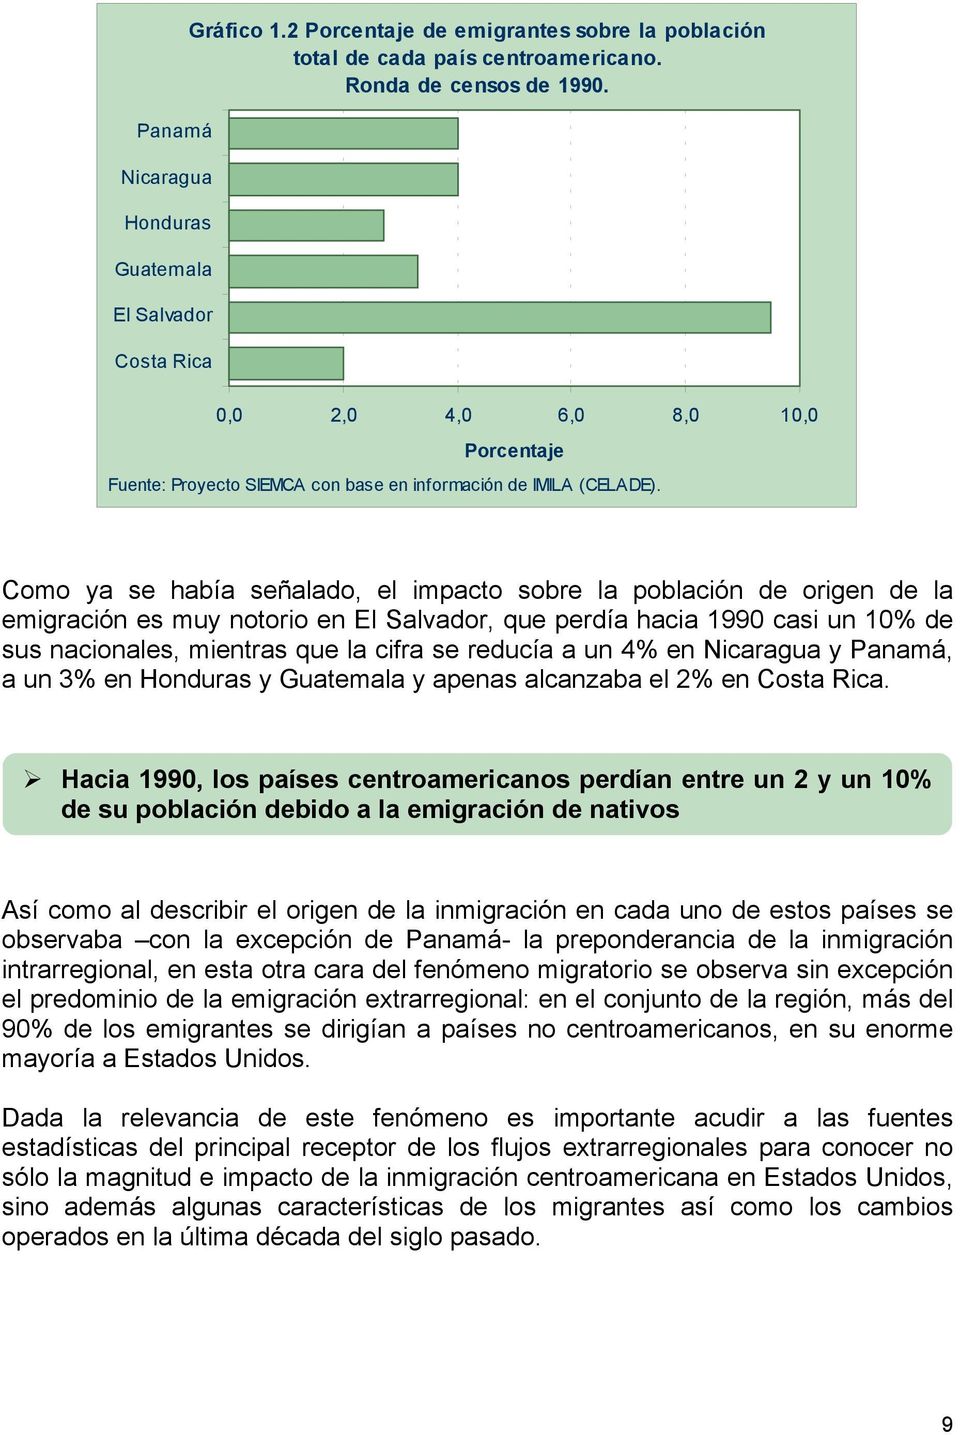 Como ya se había señalado, el impacto sobre la población de origen de la emigración es muy notorio en El Salvador, que perdía hacia 1990 casi un 10% de sus nacionales, mientras que la cifra se